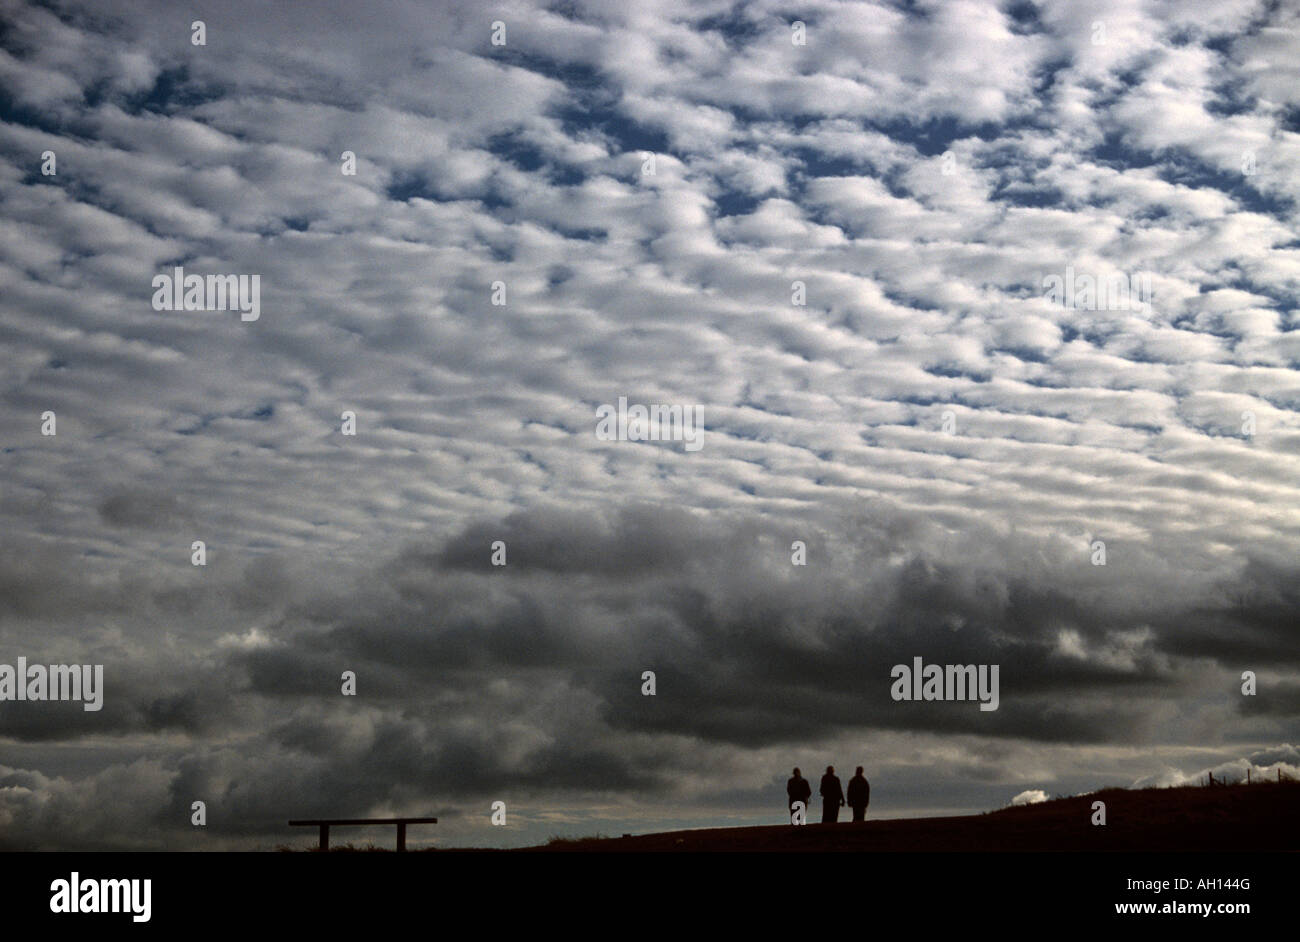 Trois personnes à pied sous les nuages Altocumulus (connu sous le nom de maquereaux ciel) Banque D'Images